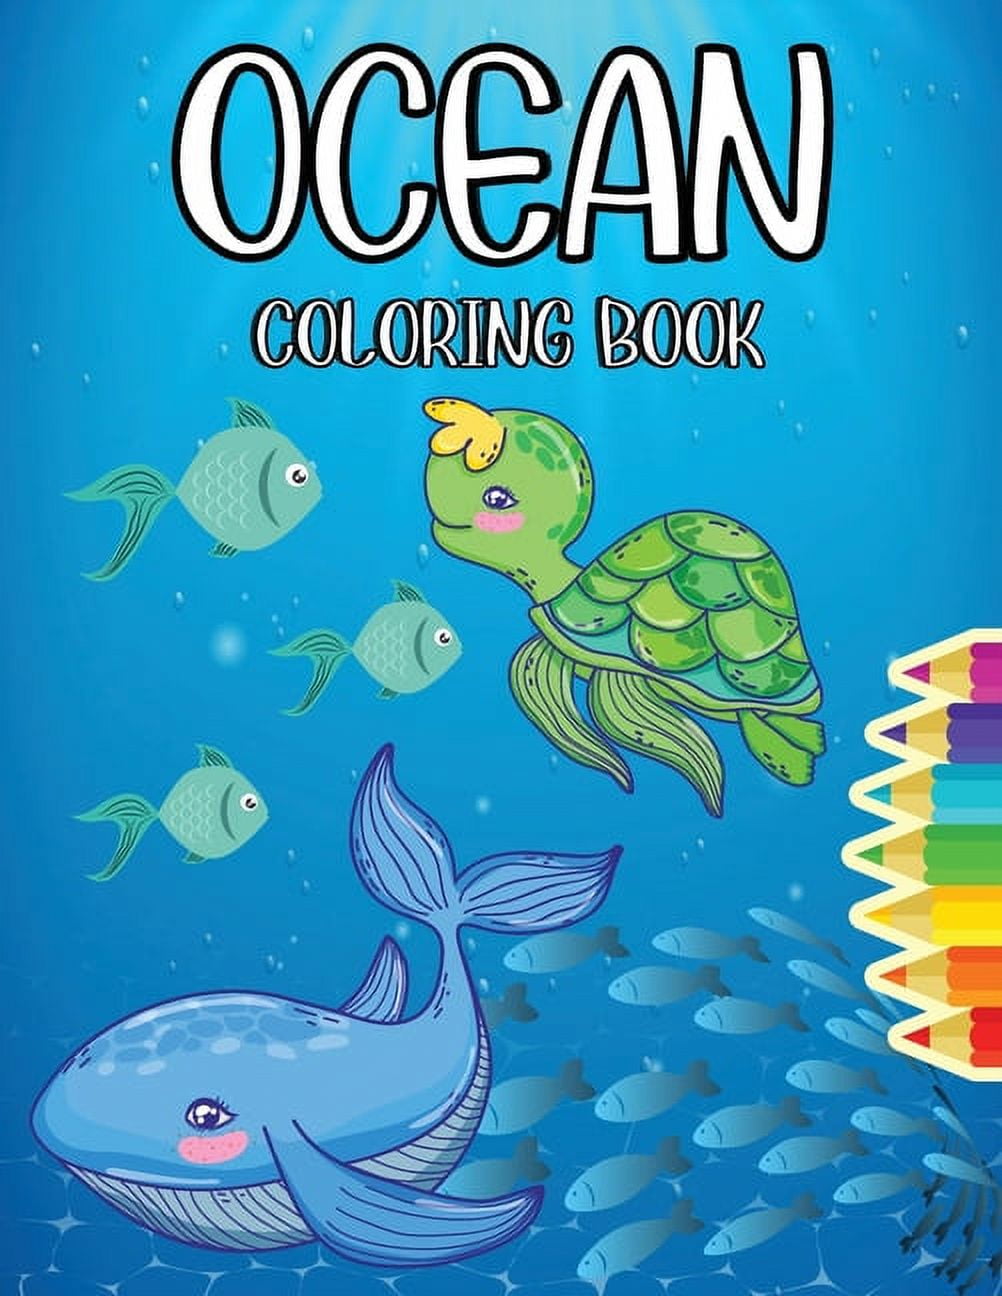 Ocean Jumbo Coloring Book: Ocean Coloring Book For KidsJumbo